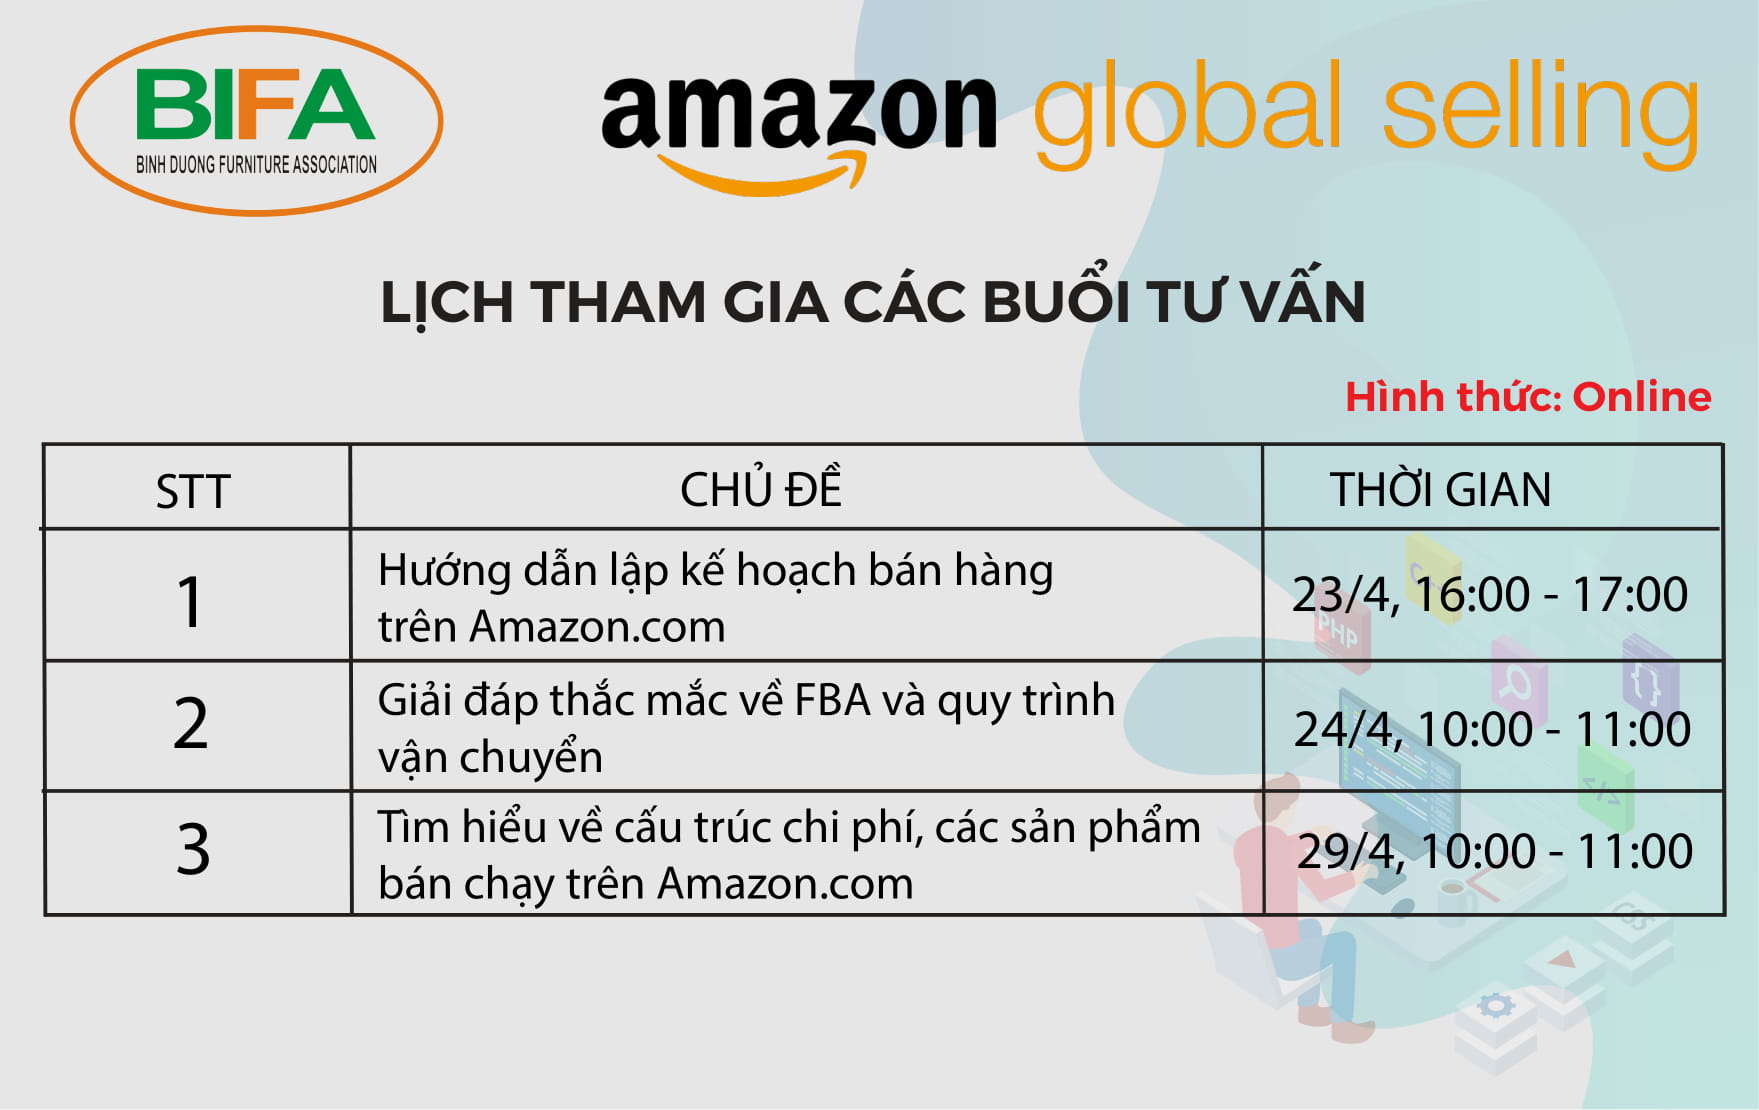 Báo Cáo Các Buổi Chia Sẻ và Tư Vấn từ Amazon Vietnam